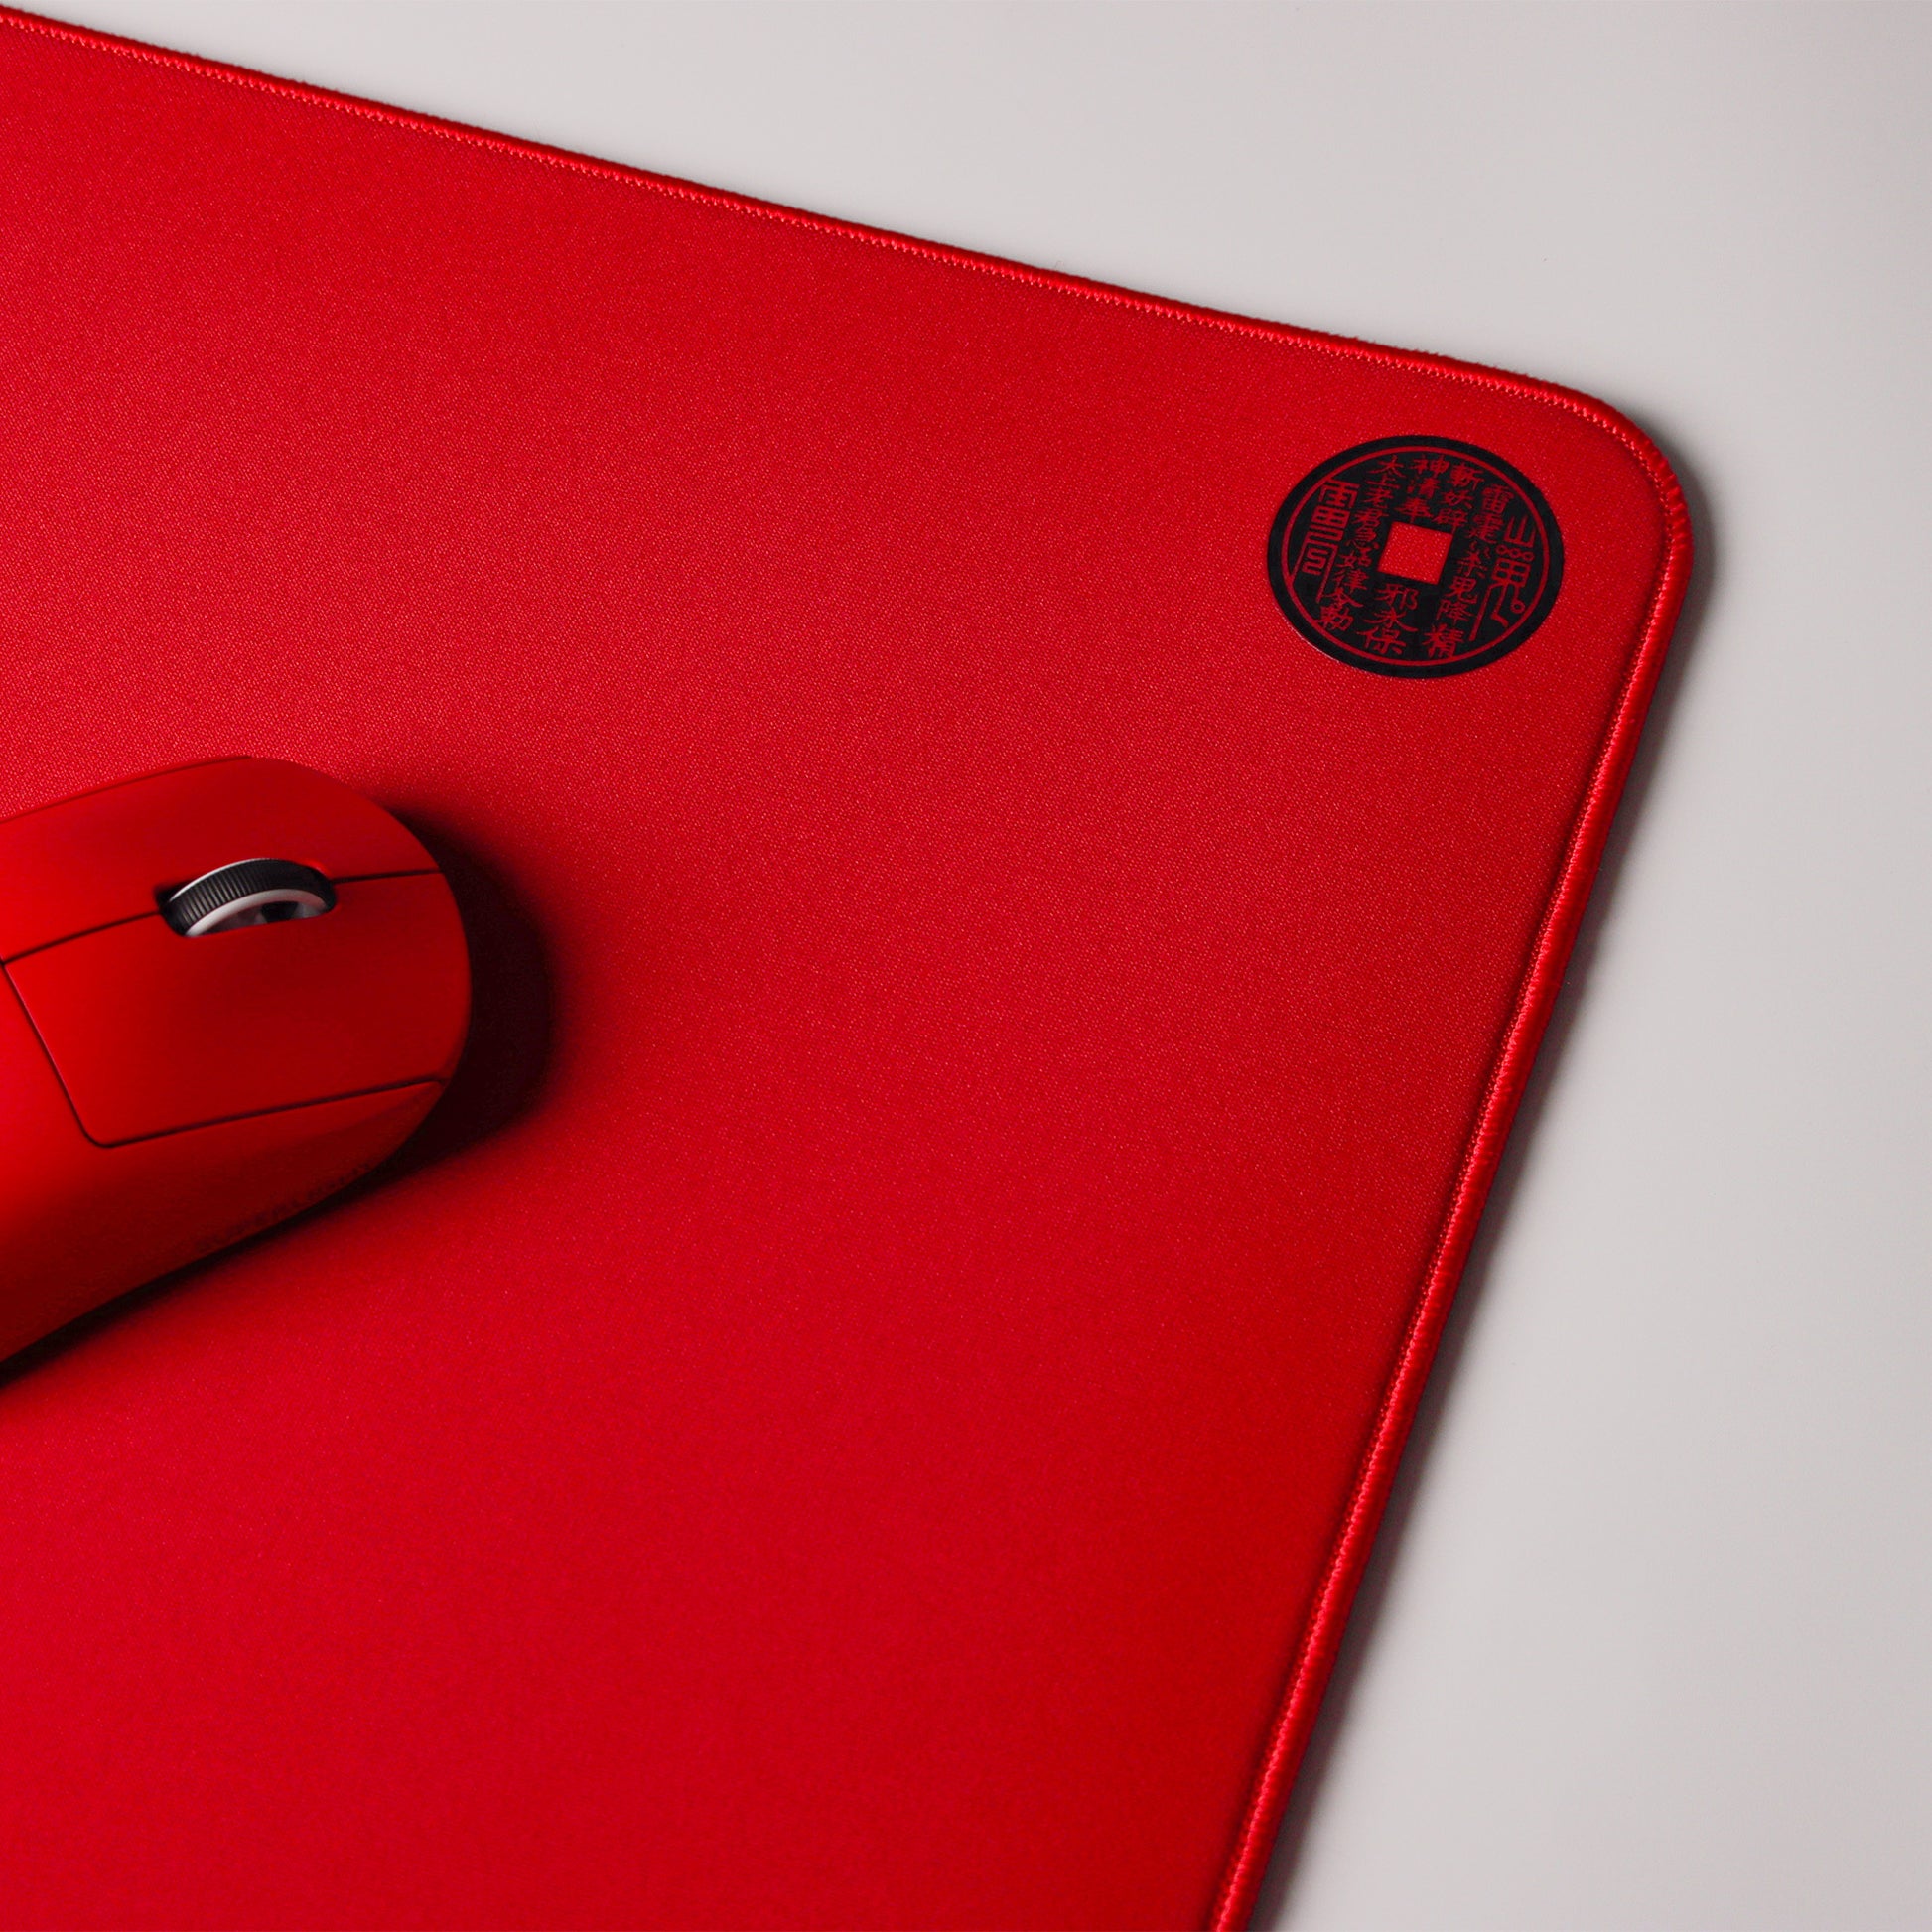 EspTiger QingSui Ya Sheng Red | Large Gaming Mousepad